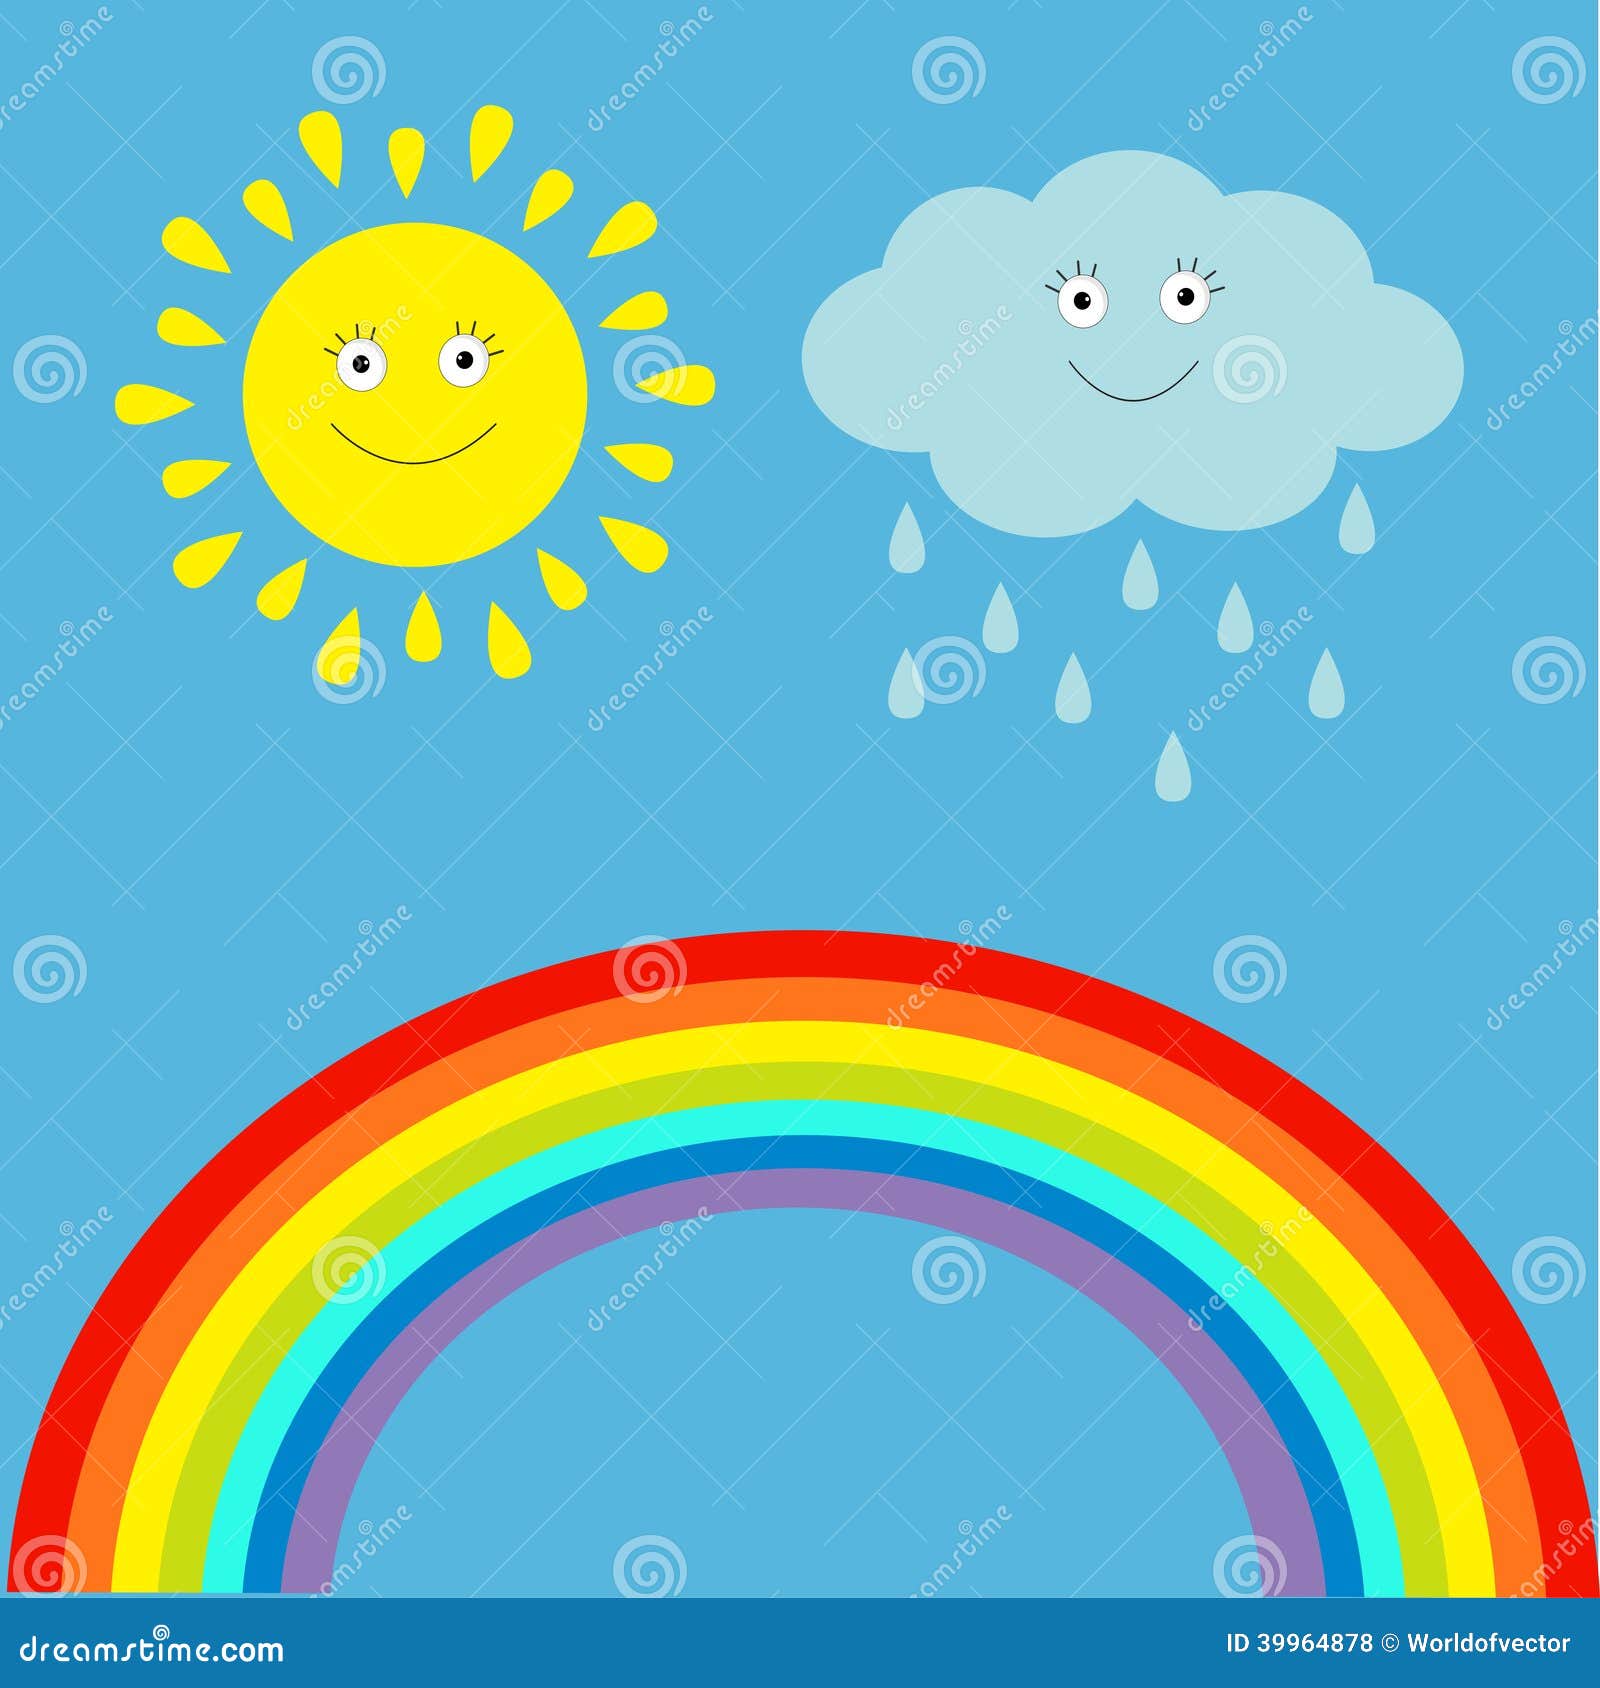 Kawaii guarda-chuva estrela nuvem sol cartoon ilustração vetorial